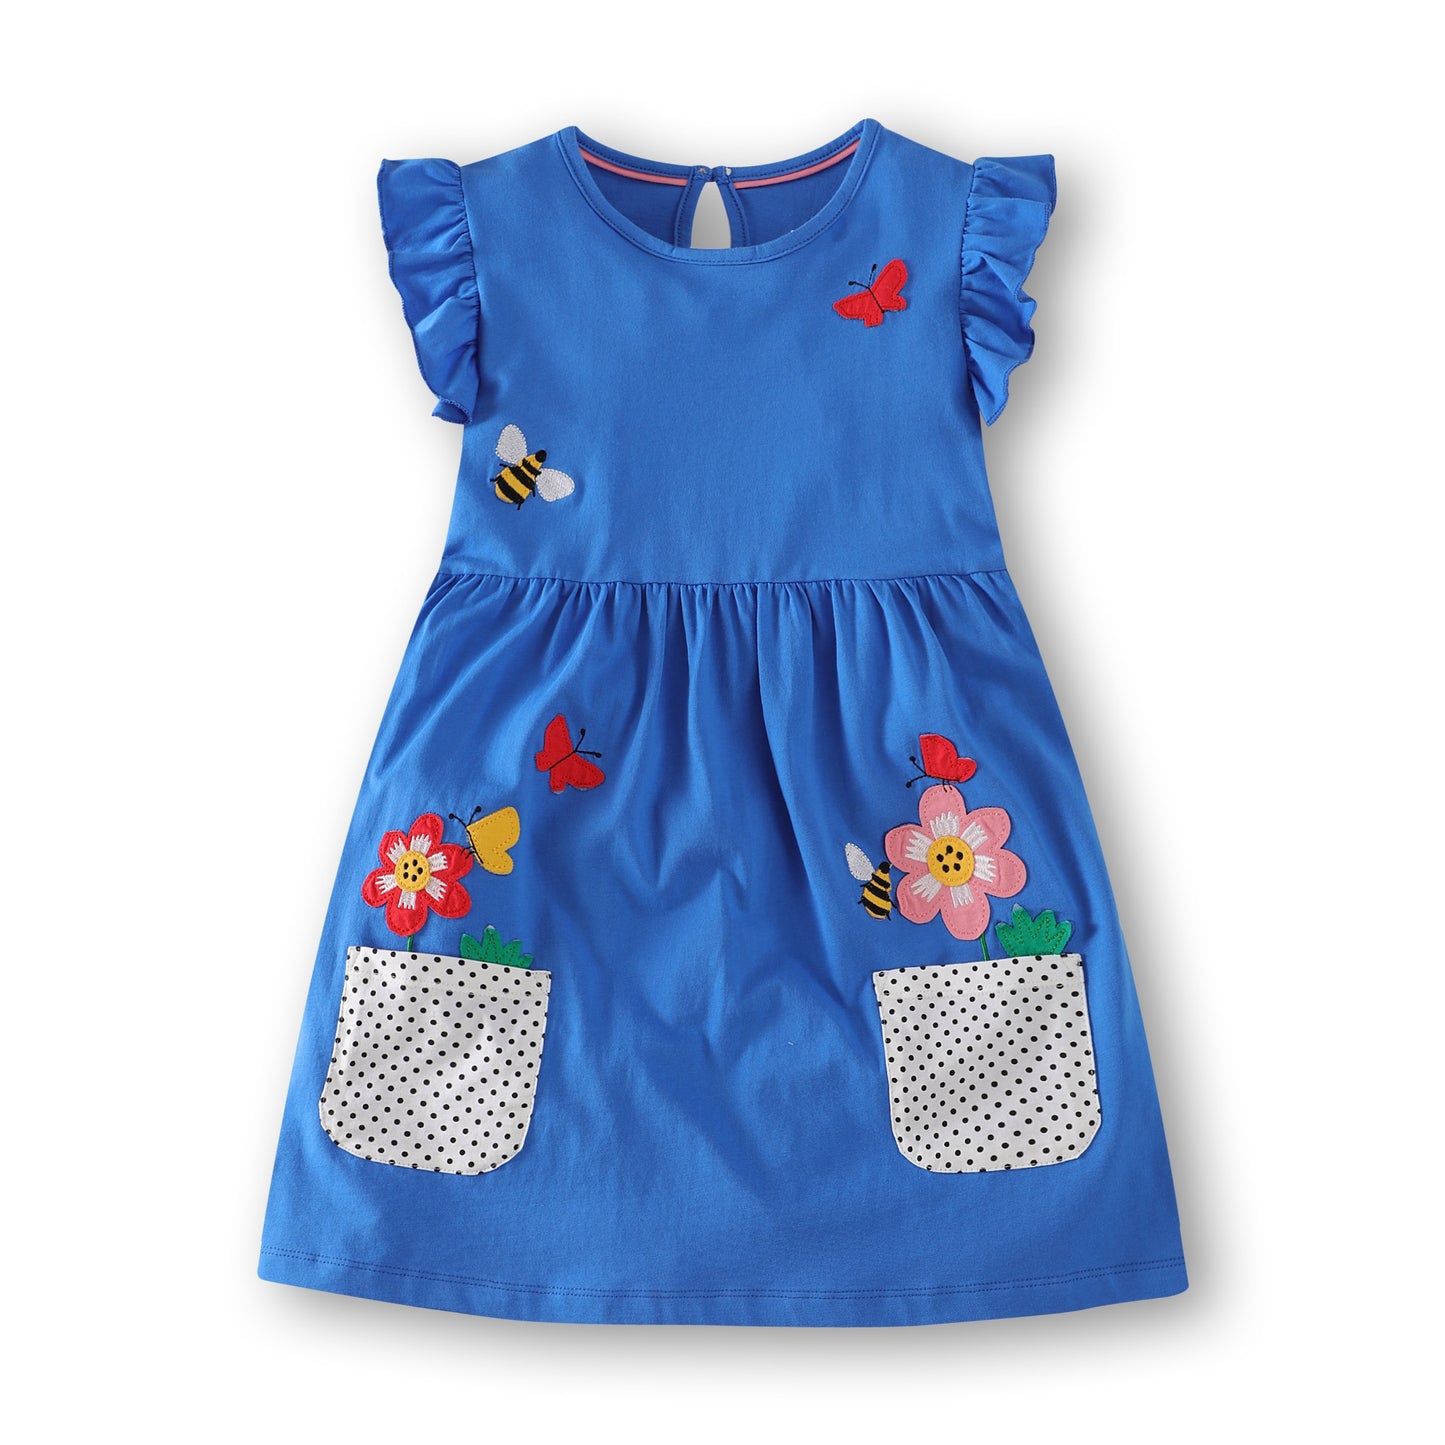 Cute Birds & Flowers Applique Dress, Cotton, 2-7Y